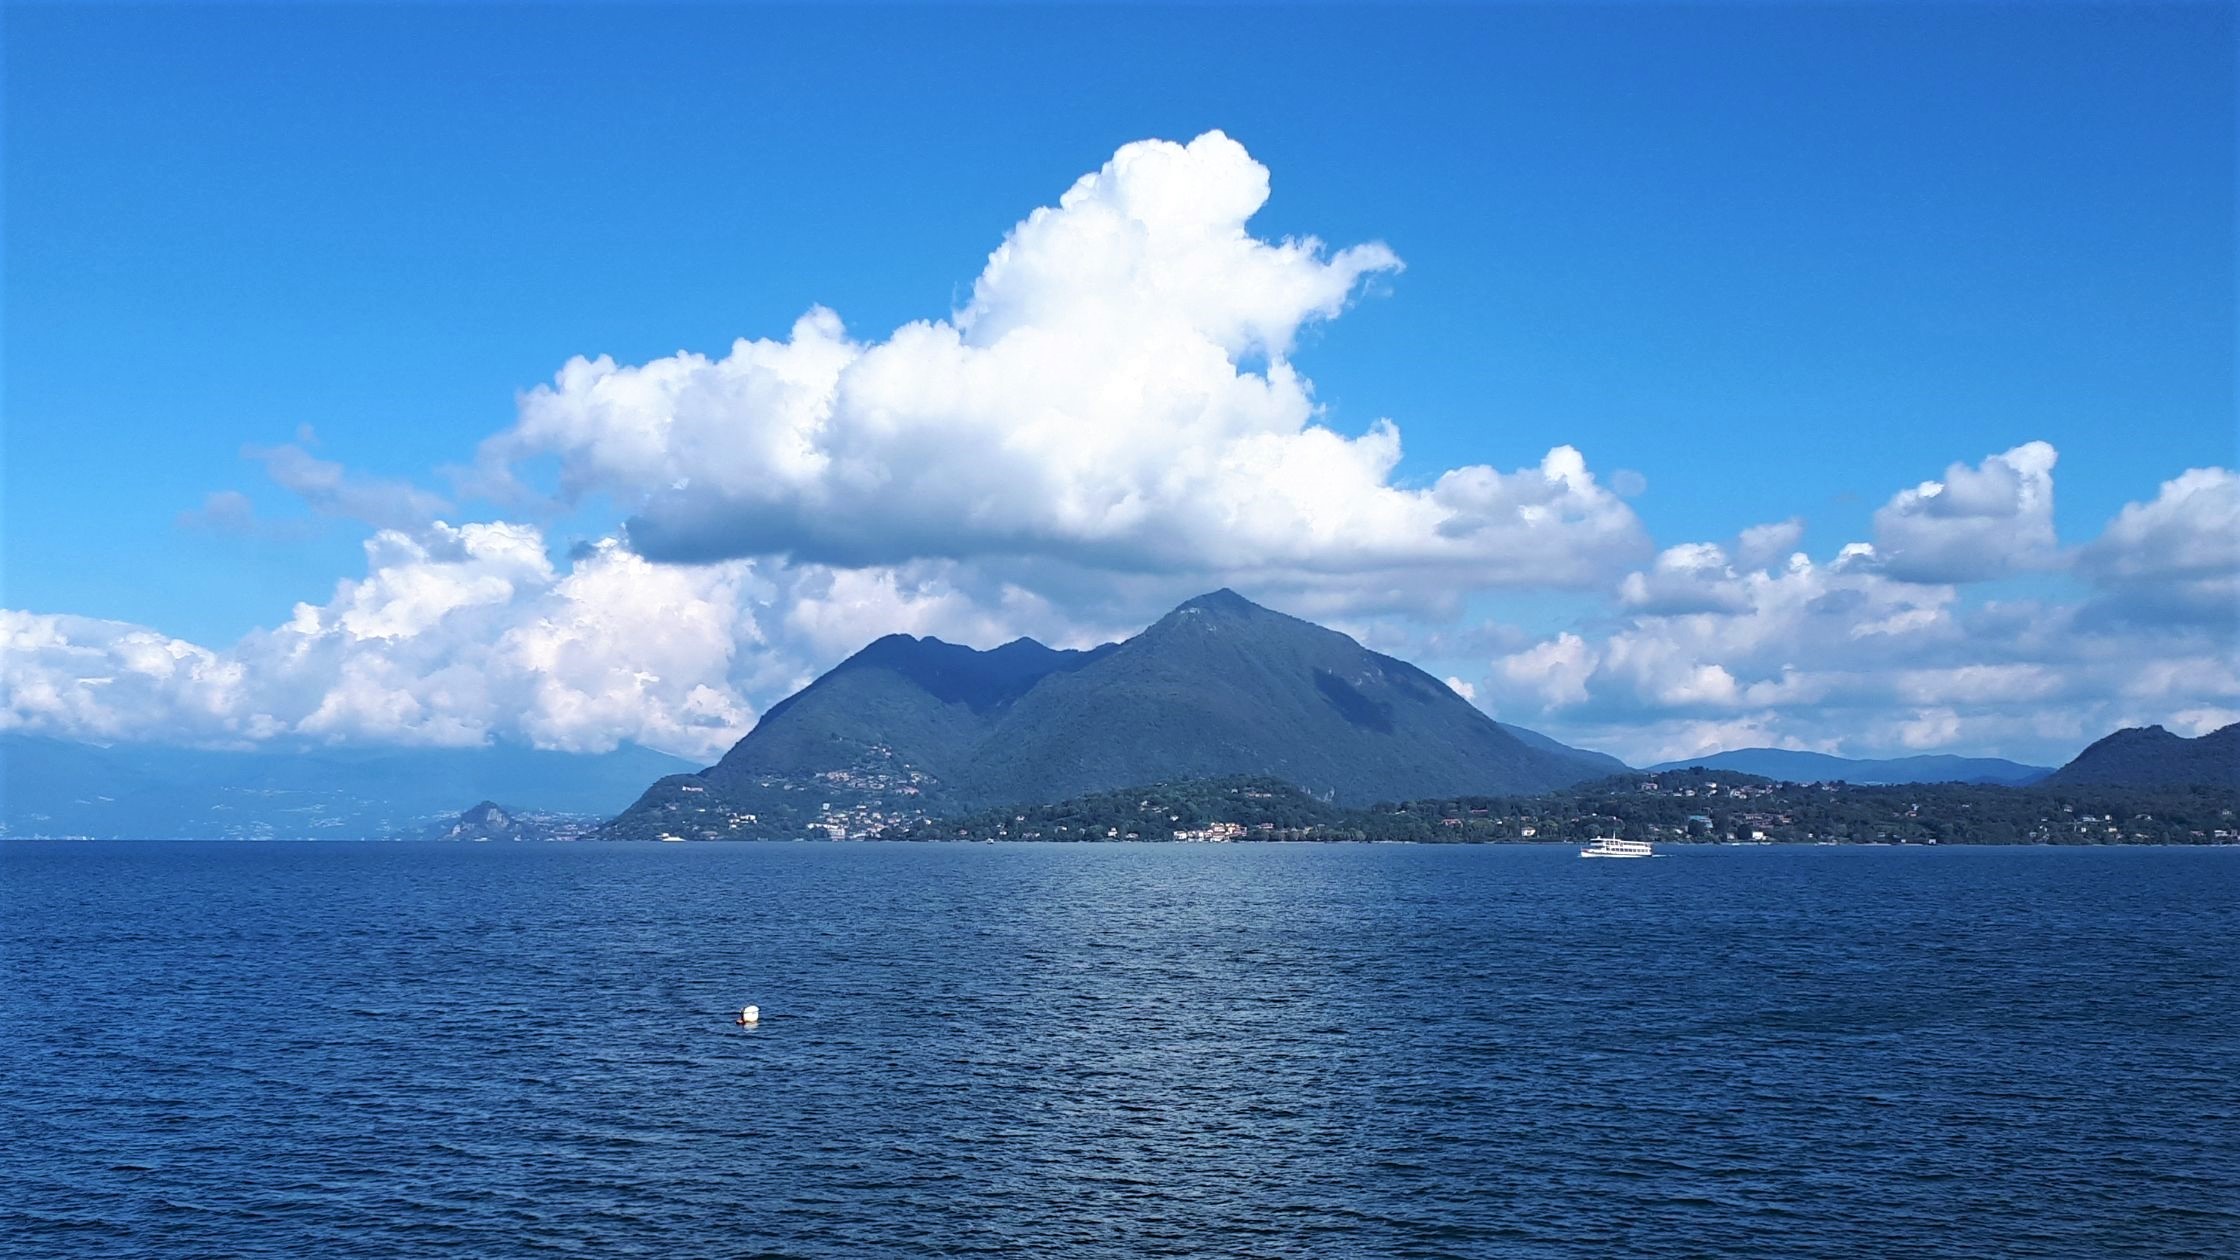 Urlaub am Lago Maggiore in Coronazeiten Ein Erfahrungsbericht (Teil 2